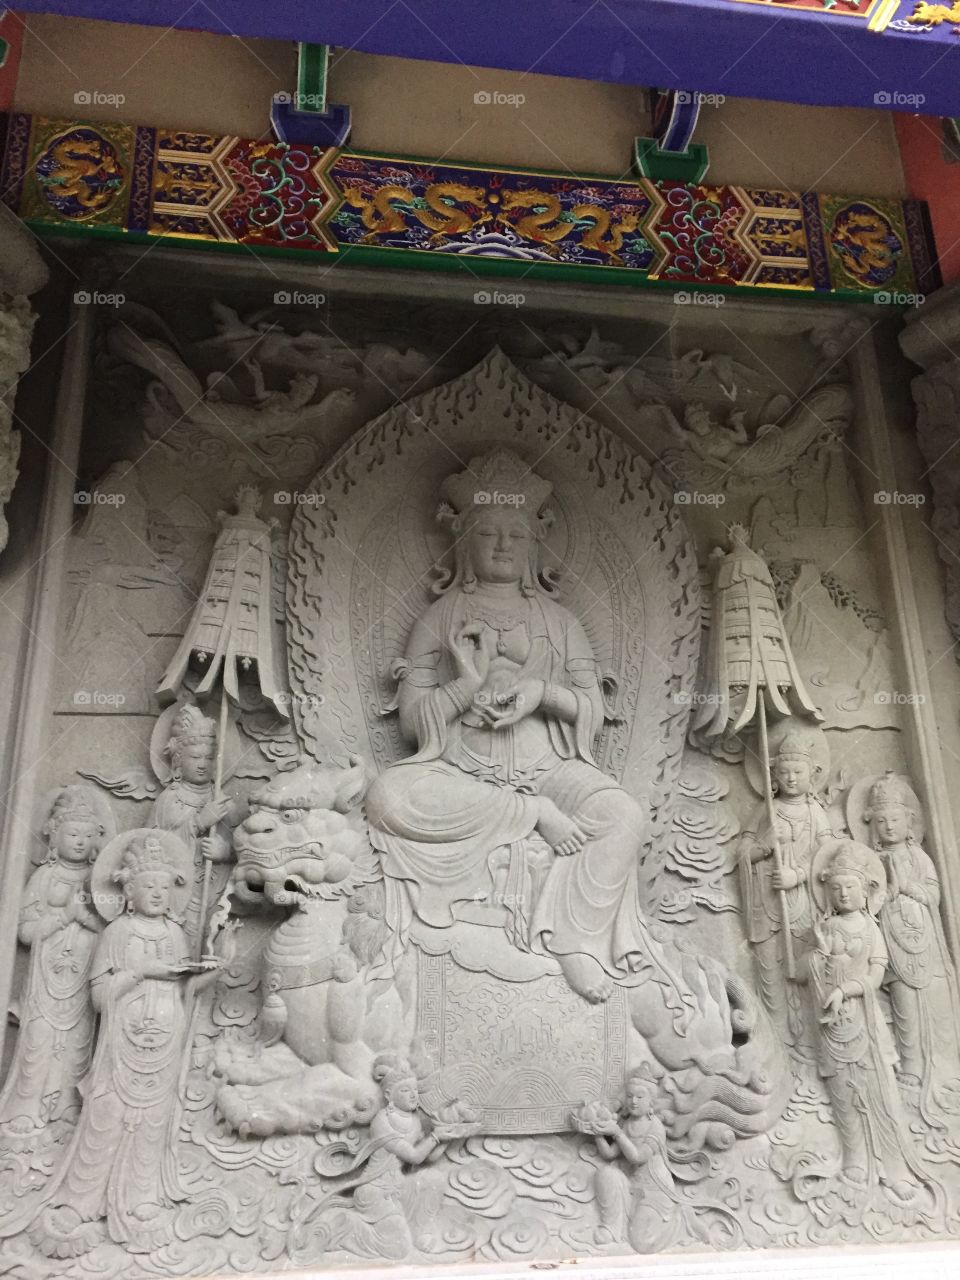 “Hong Kong & Chinese Zodiac Symbolic Statues, Symbolizing The Chinese Zodiac Signs. Pn the Monastery.Ngong Ping, Lantau Island, Hong Kong. Copyright Chelsea Merkley Photography 2019. “